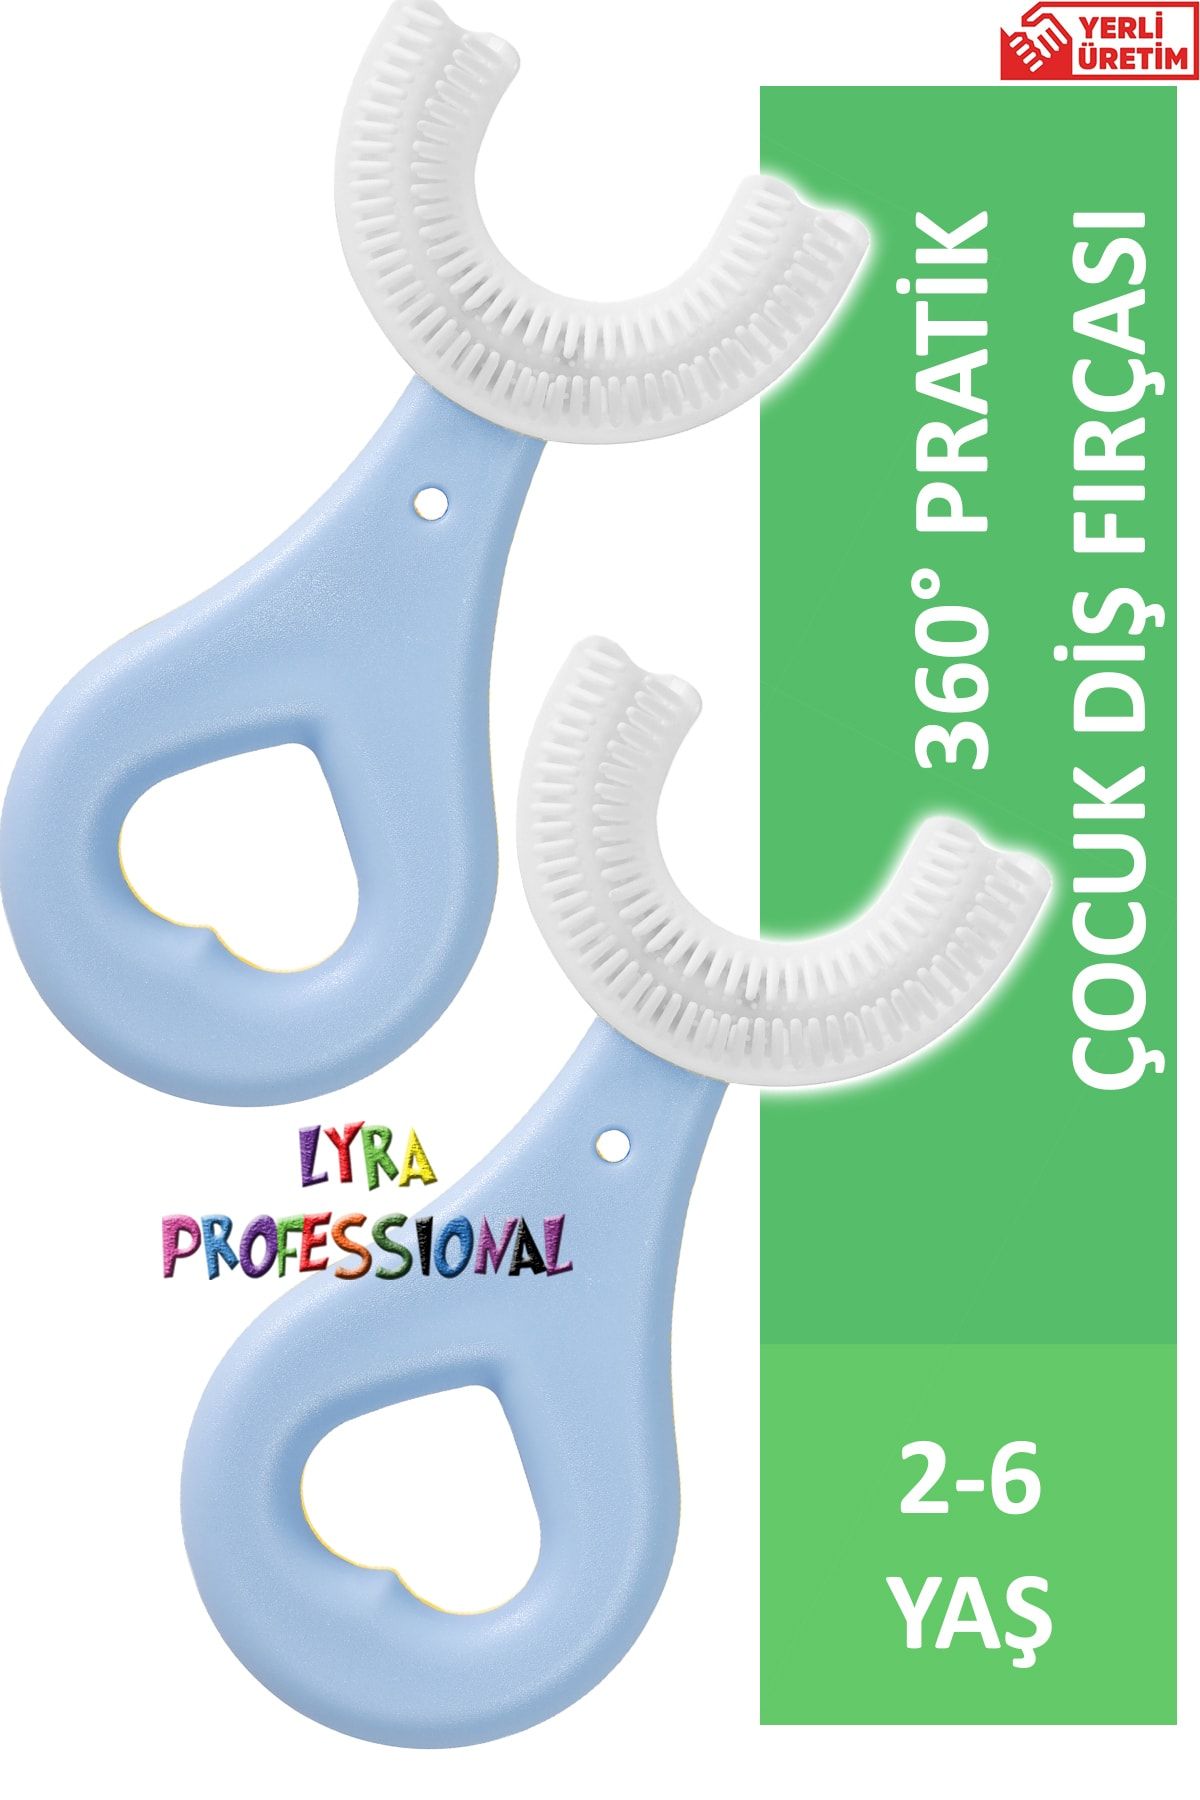 Lyra Professional U Şeklinde 2 Adet Pratik Çocuk Diş Fırçası 2-6 Yaş Mavi